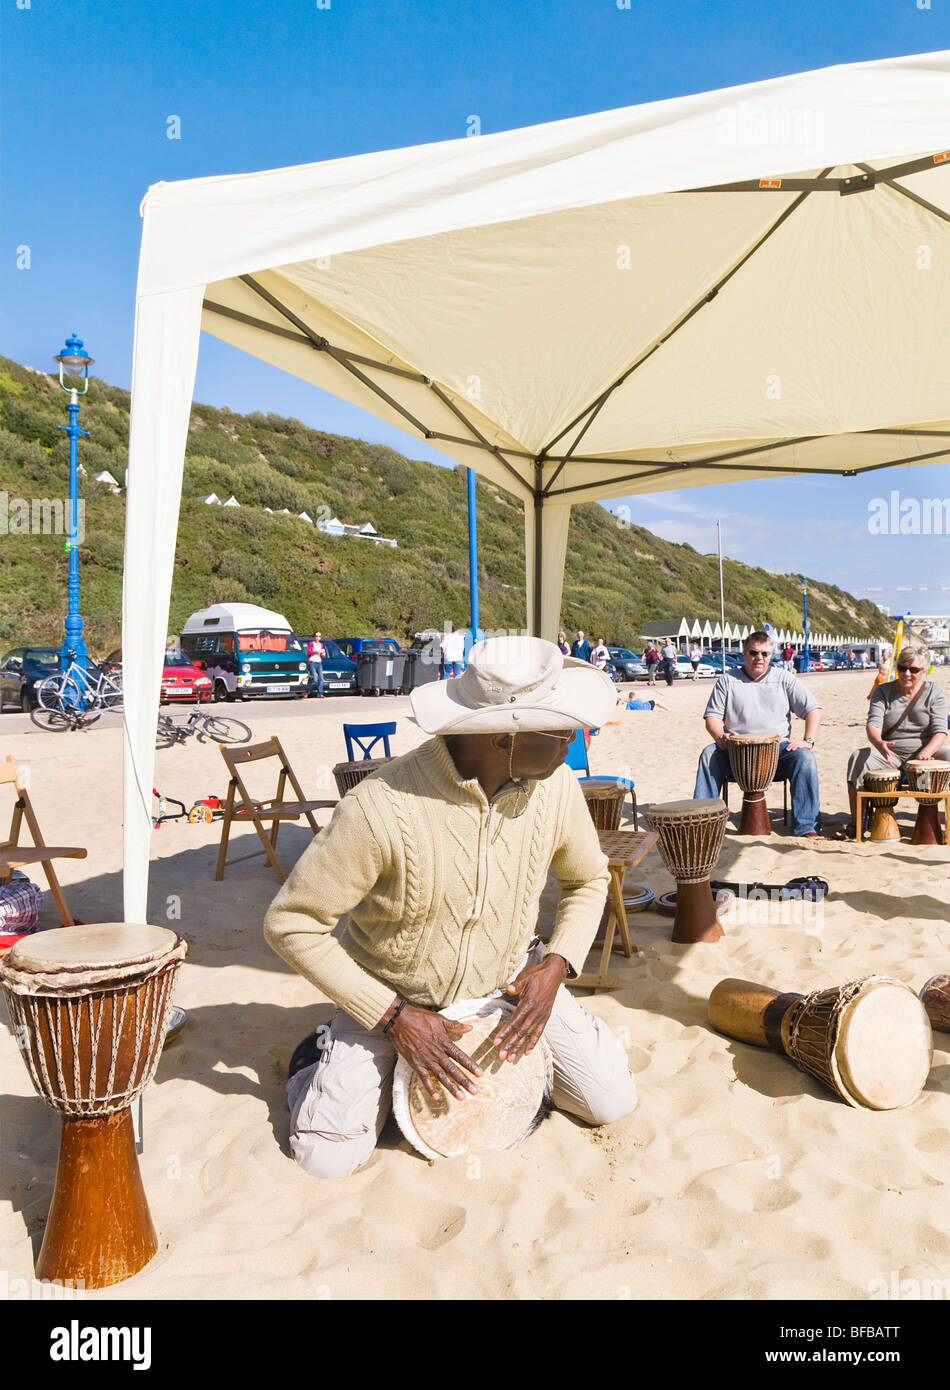 Un atelier de percussion. Un instructeur donne une leçon de tambour pour les vacanciers sur la plage, Boscombe Bournemouth, Dorset. UK. Banque D'Images